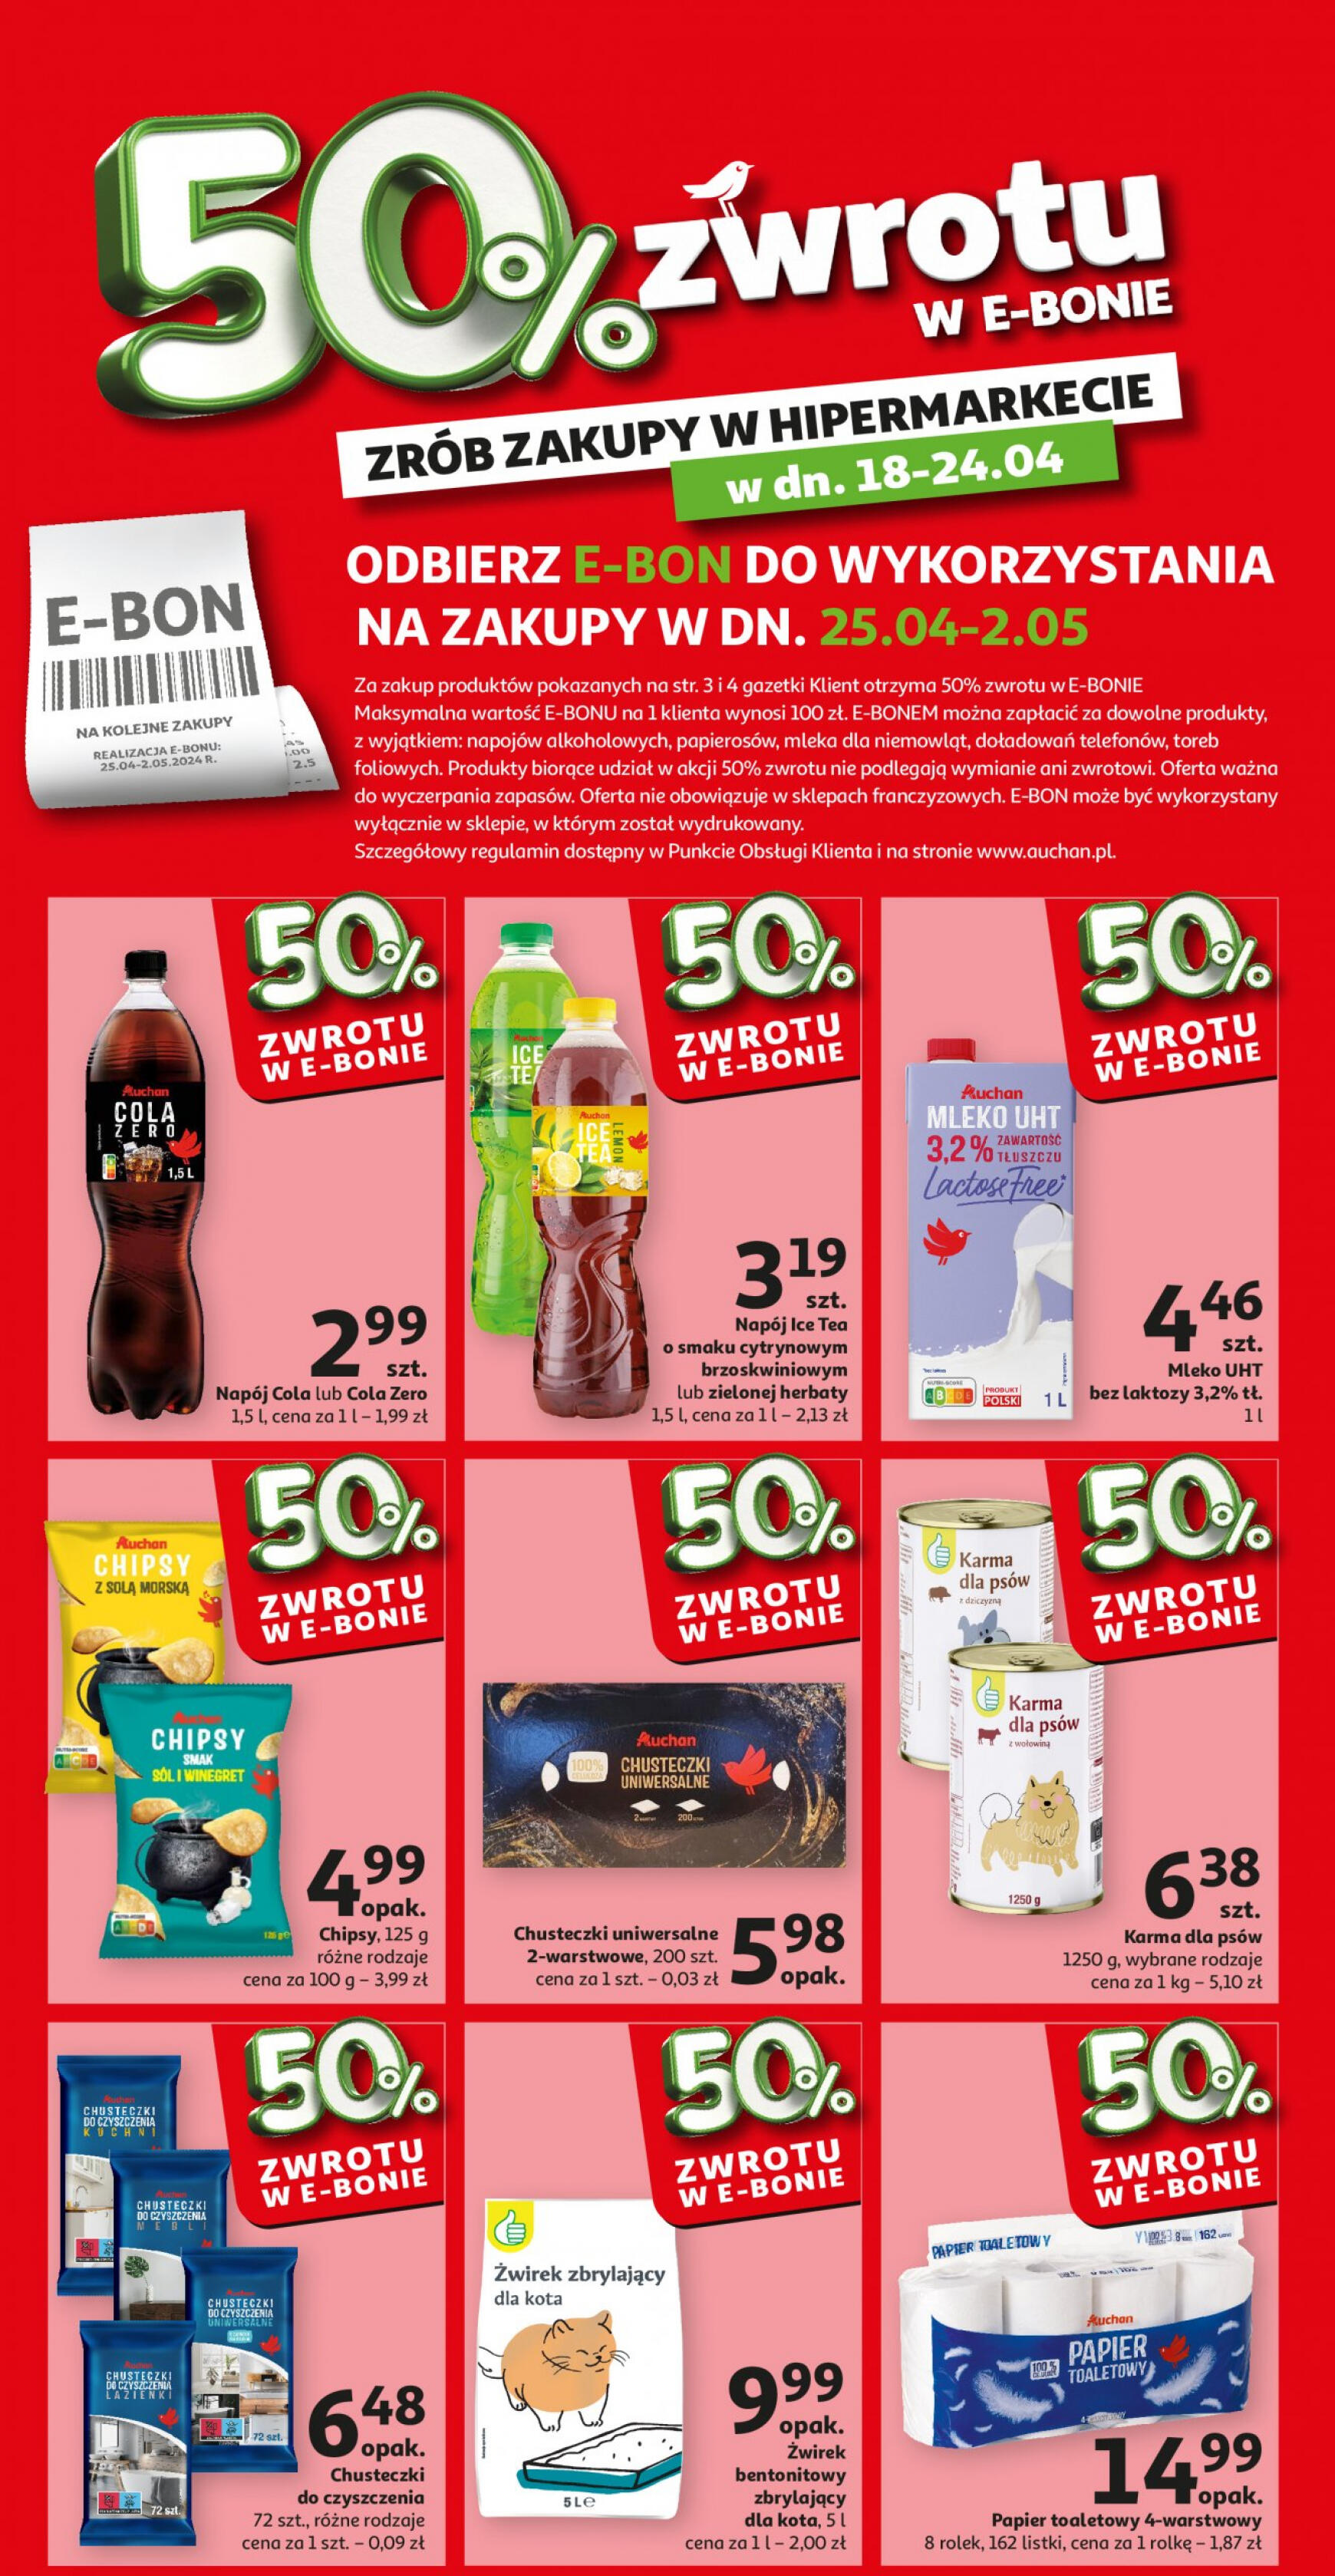 auchan - Auchan - Oferta 50% zwrotu w e-bonie gazetka aktualna ważna od 18.04. - 24.04. - page: 1